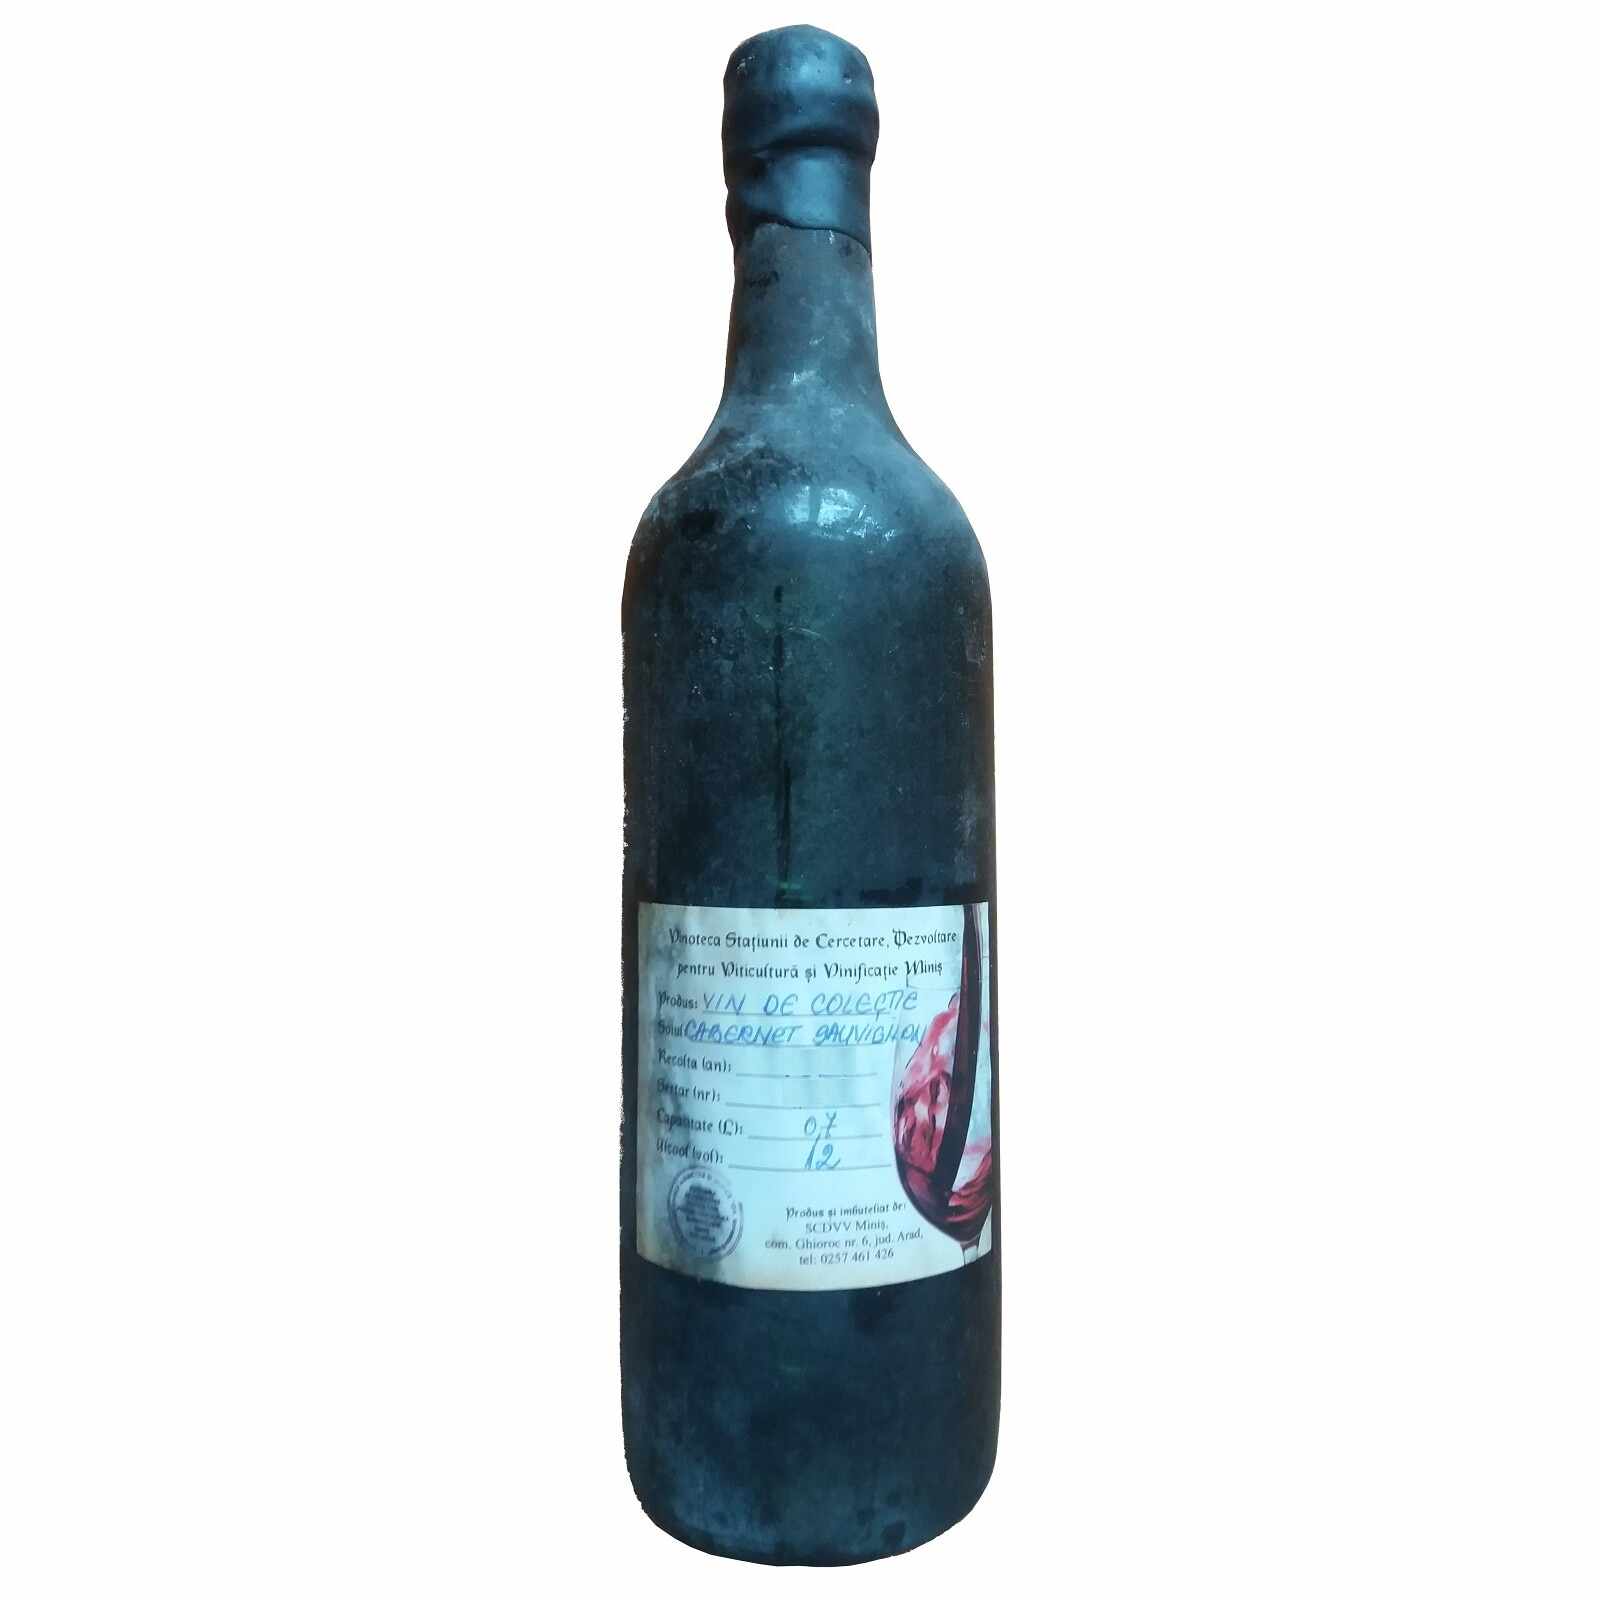 Vin de colectie Minis Cabernet Sauvignon 1984 rosu, in cutie lemn, 0.7L